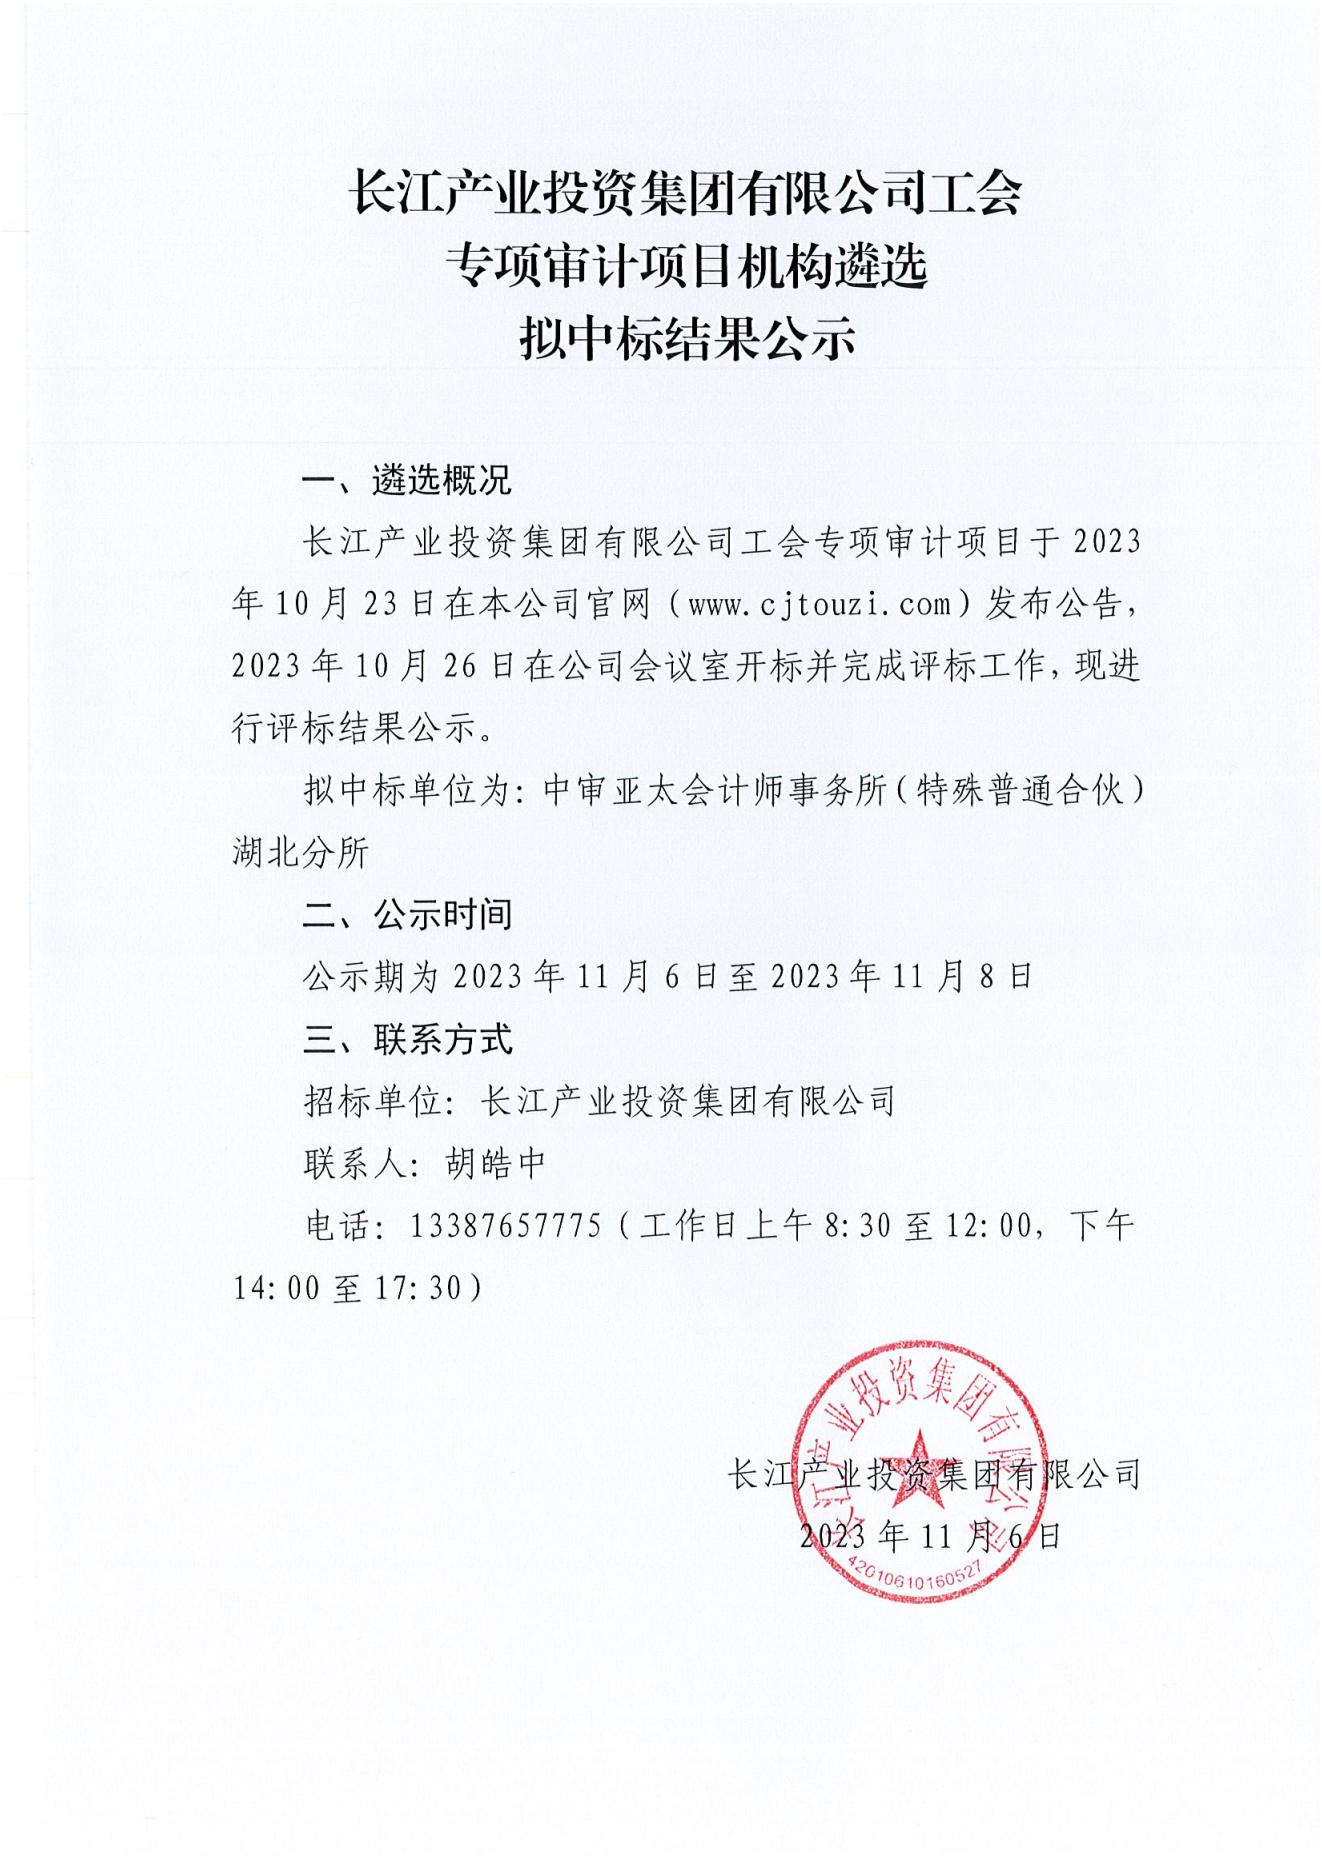 3-2 亚娱体育·(中国)官方网站工会专项审计项目机构遴选中标结果公示（盖章版）.jpg